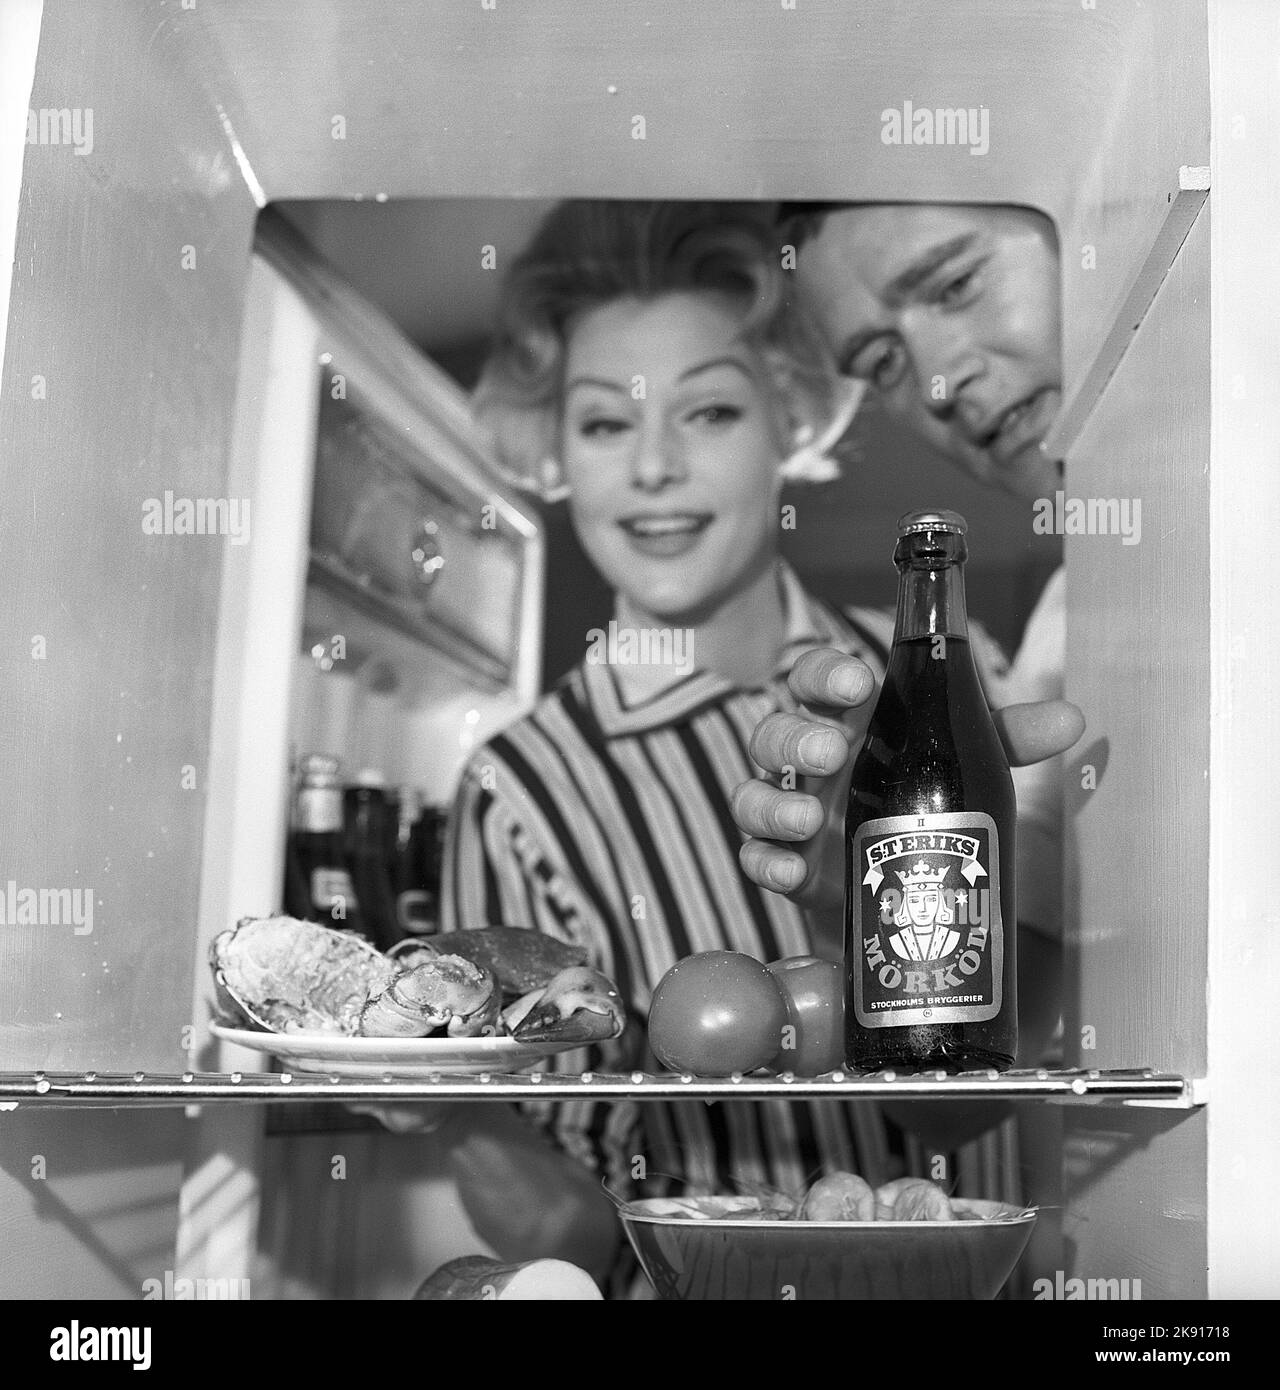 In cucina 1950s. Una coppia in cucina e nel frigorifero dove vengono conservati il cibo e la birra. Svezia 1959. Kristoffersson rif CH77-7 Foto Stock